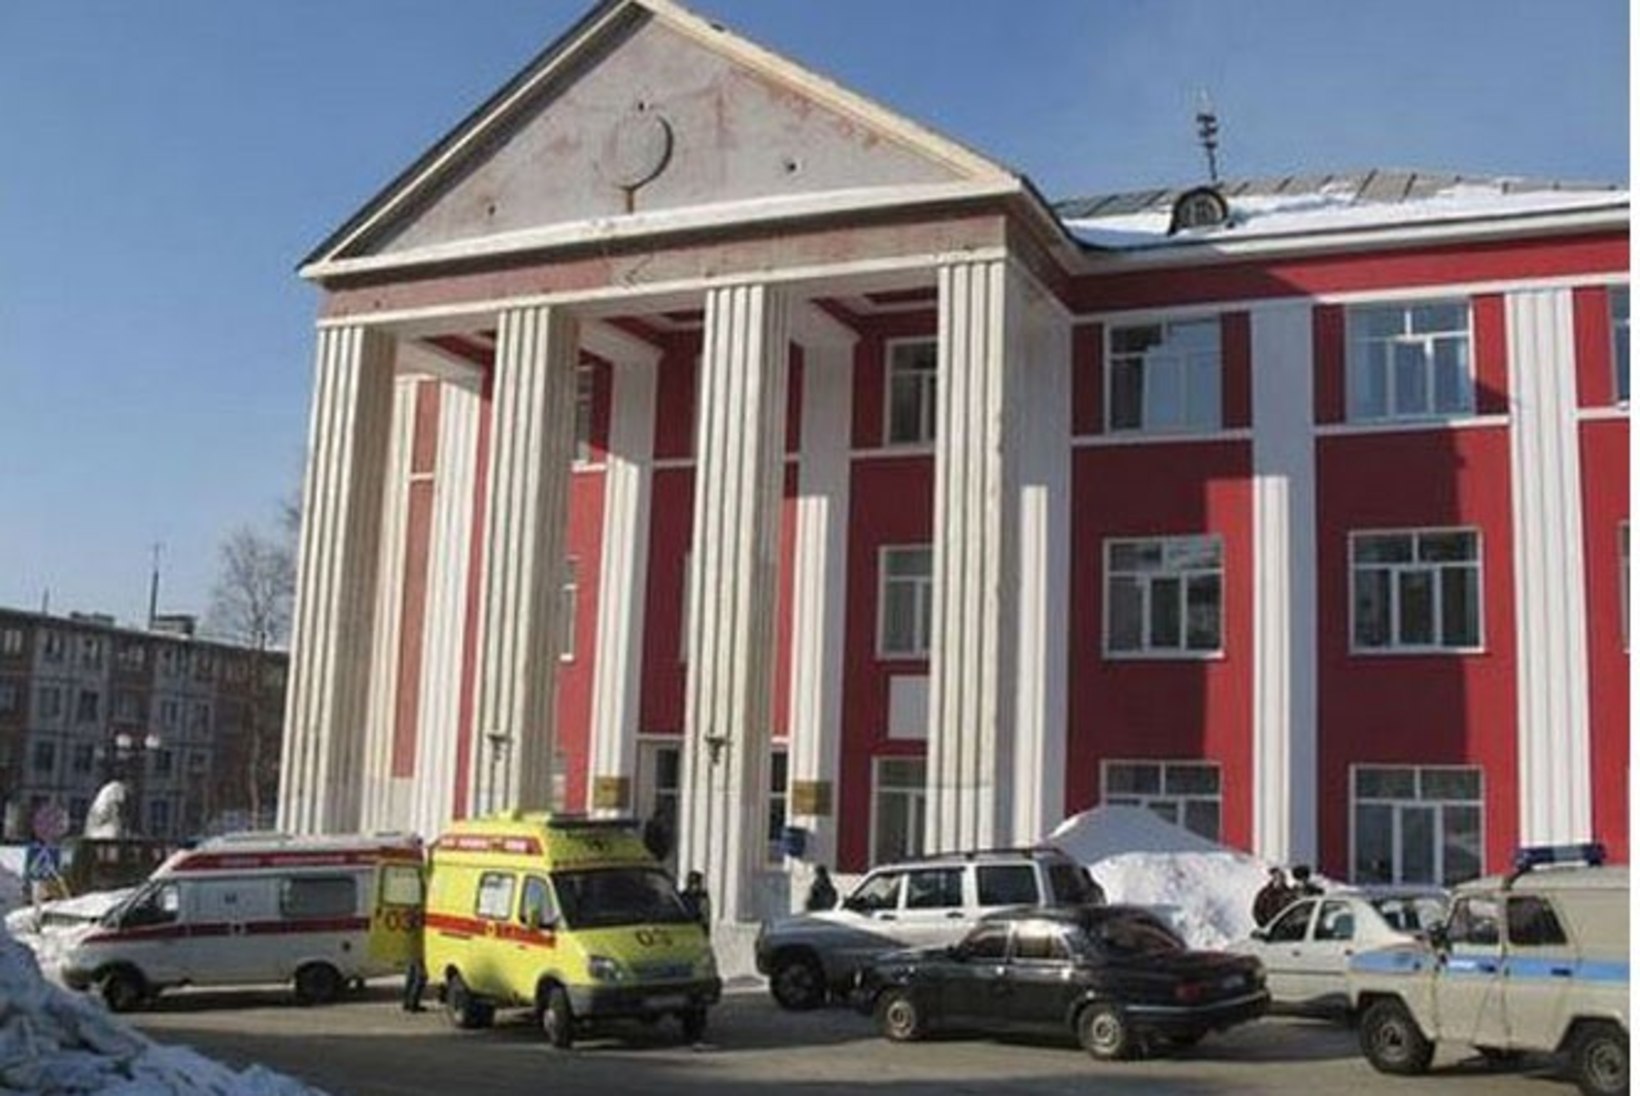 Venemaa linnakeses, kus filmiti "Leviaatani" tappis meeleheitel ettevõtja linnajuhid 